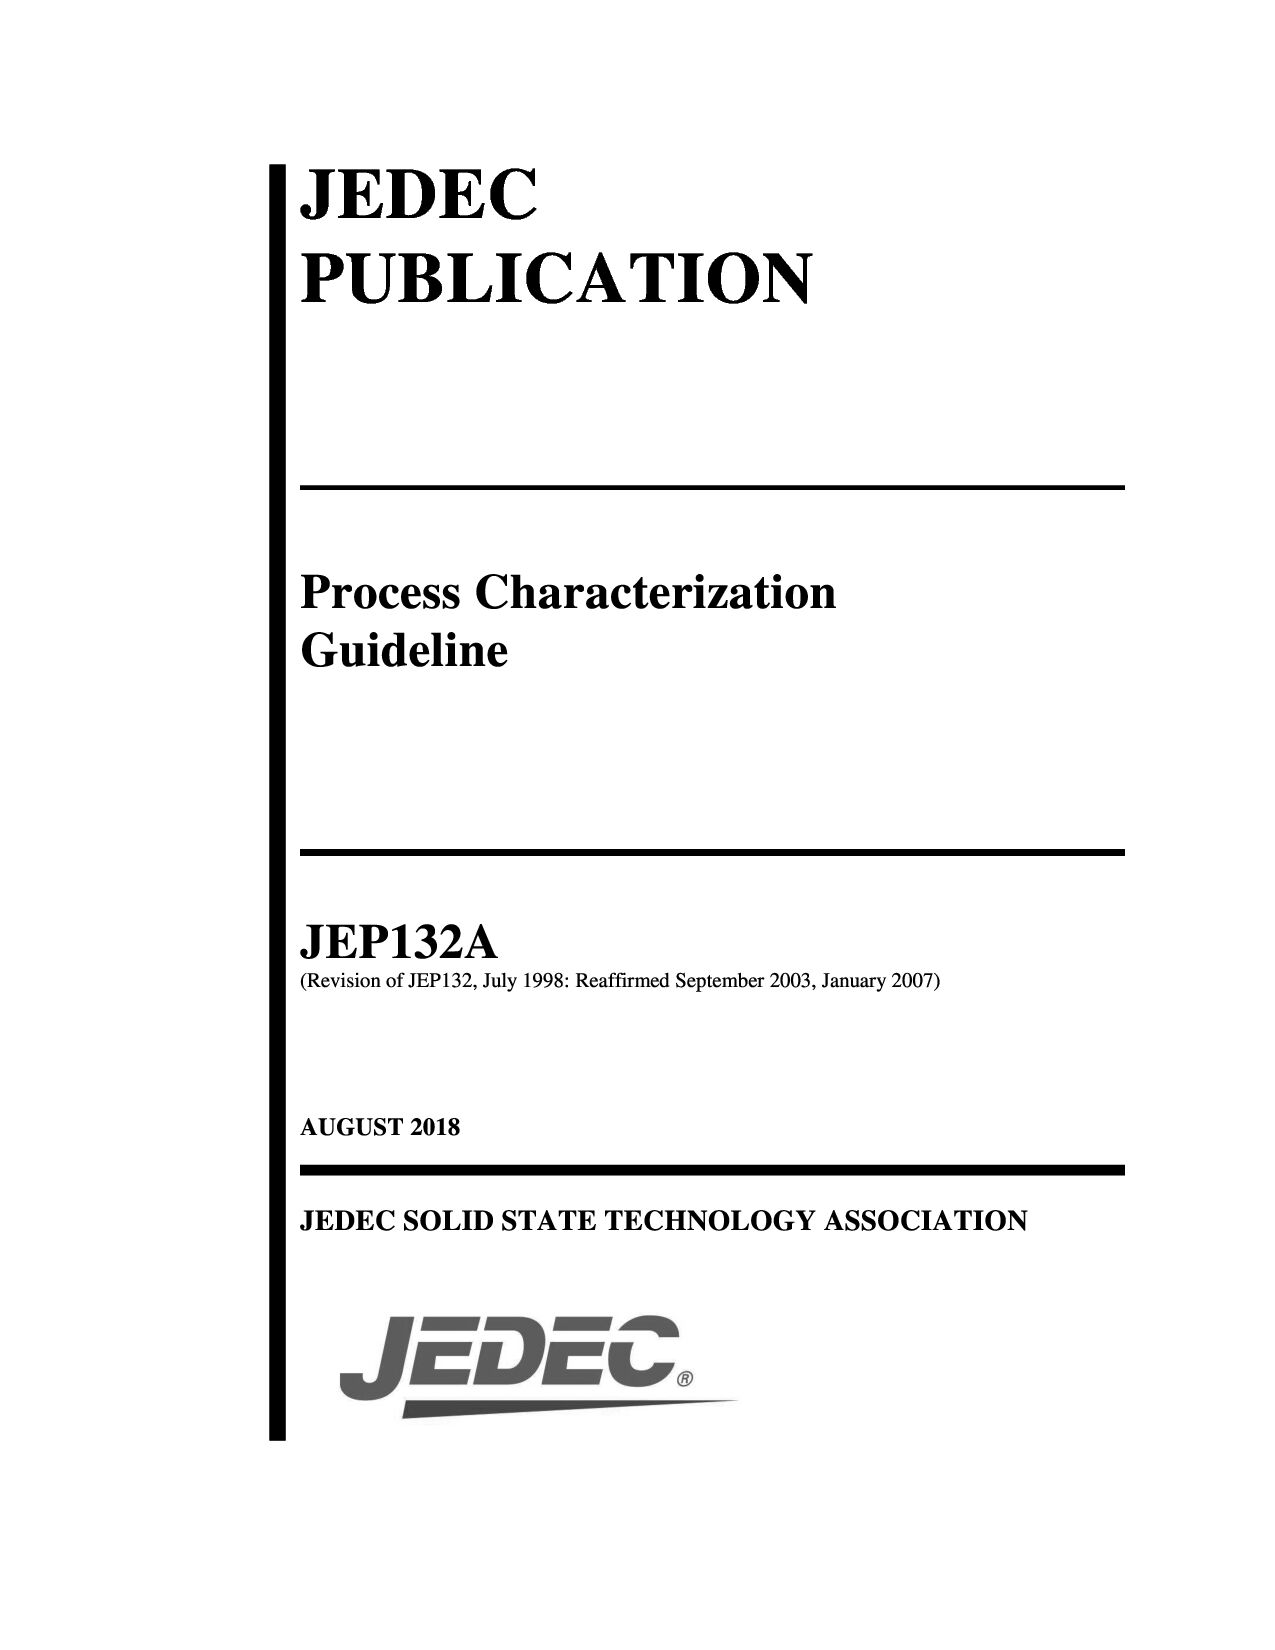 JEDEC JEP132A-2018